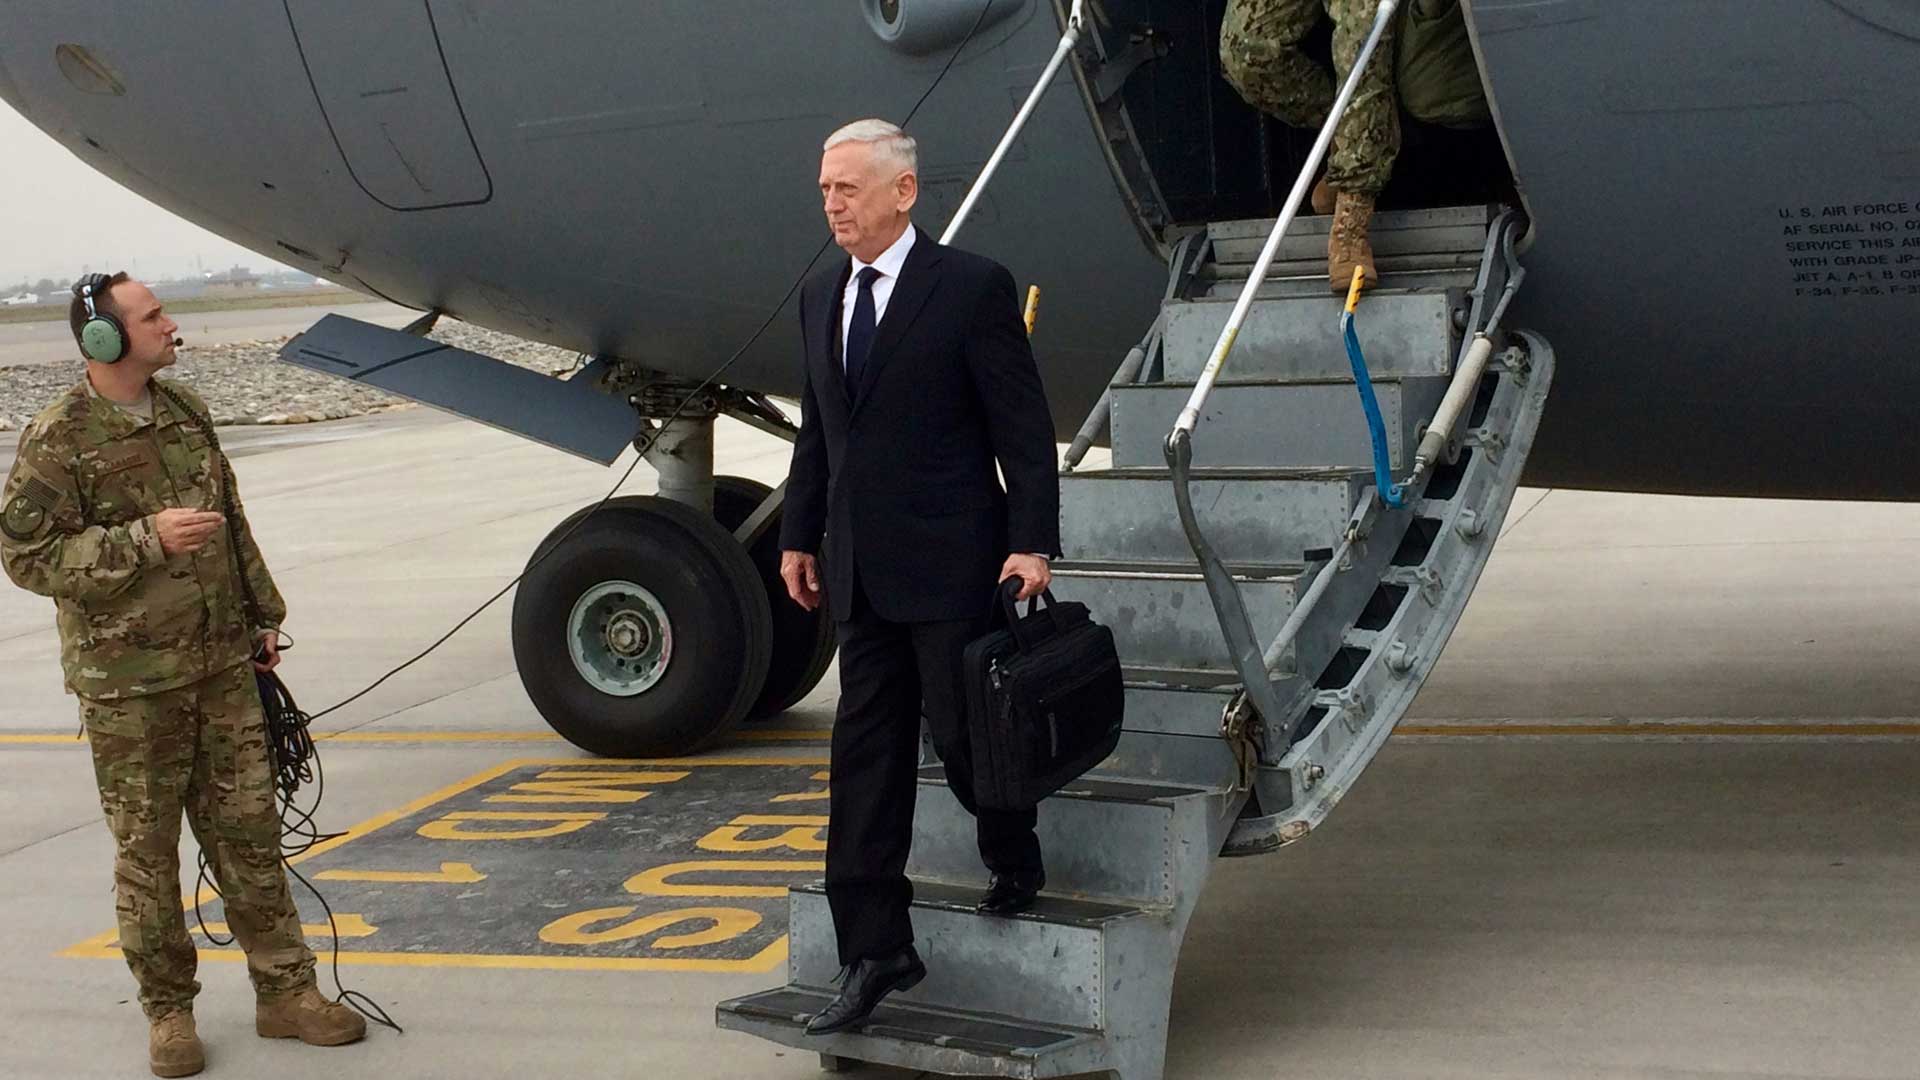 Mattis viaja por sorpresa a Afganistán para negociar la paz con los talibanes